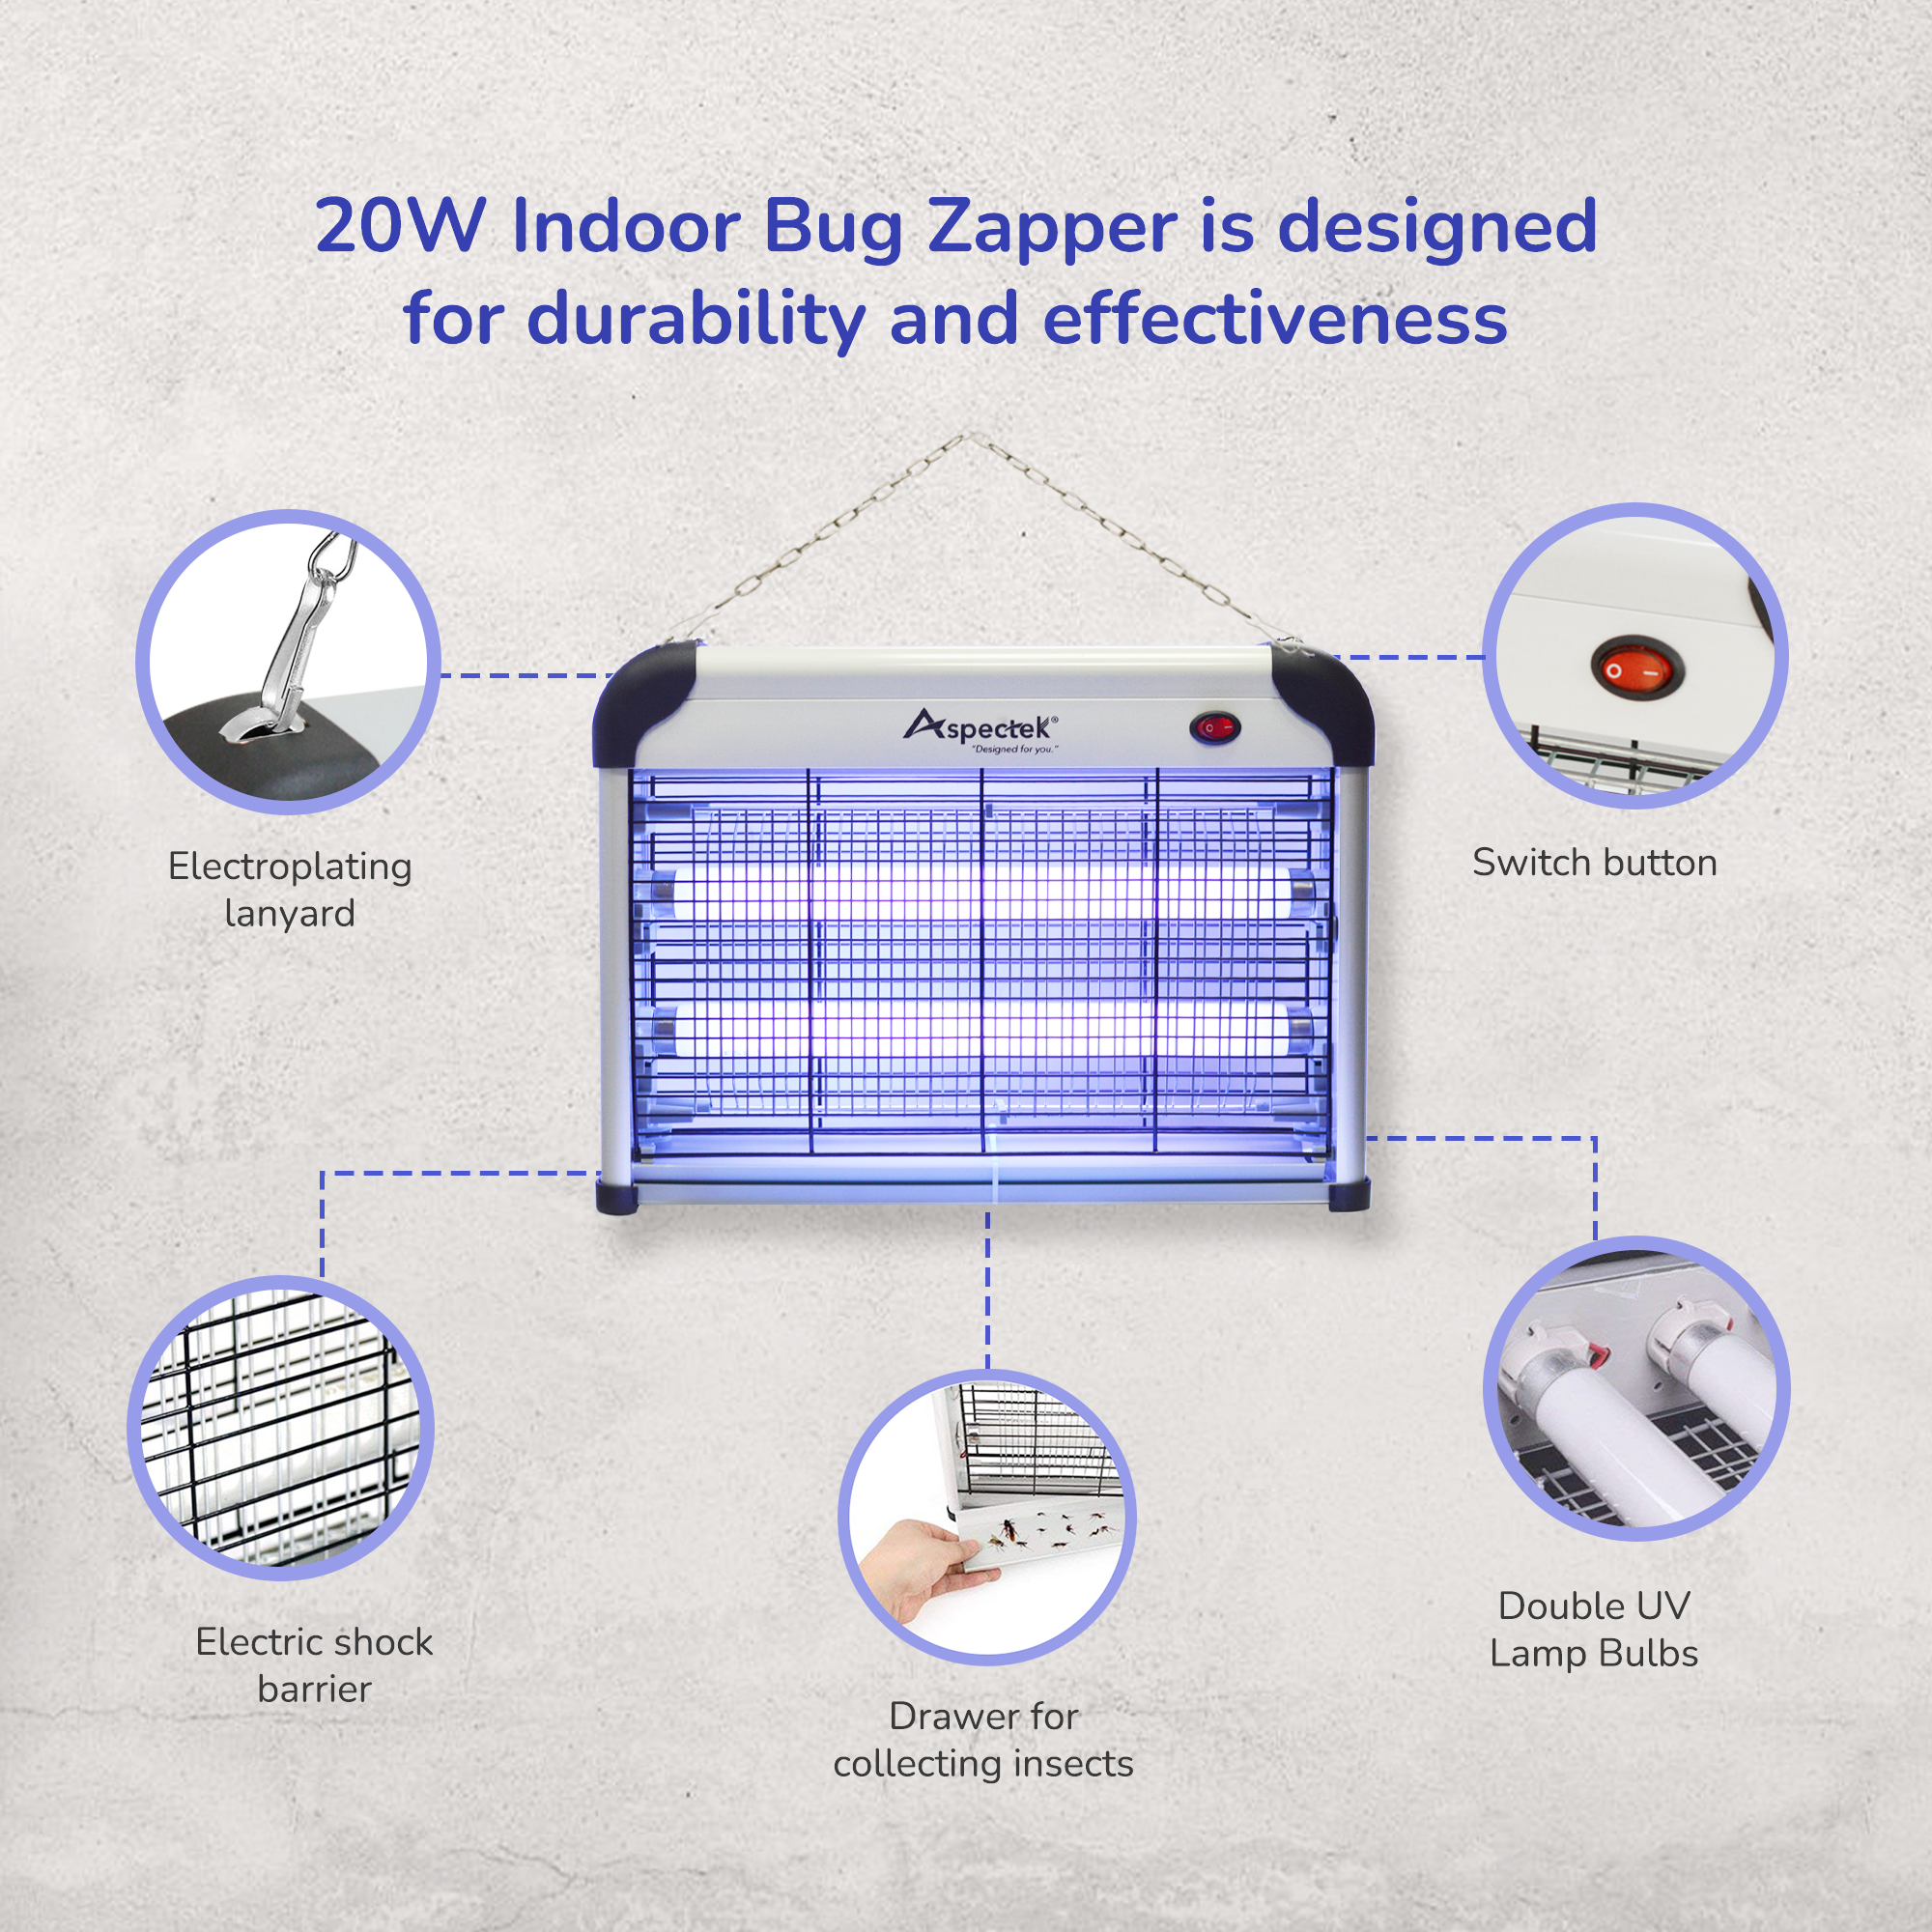 Aspectek 20W Indoor Bug Zapper Includes 2 Replacement Bulbs BLACK